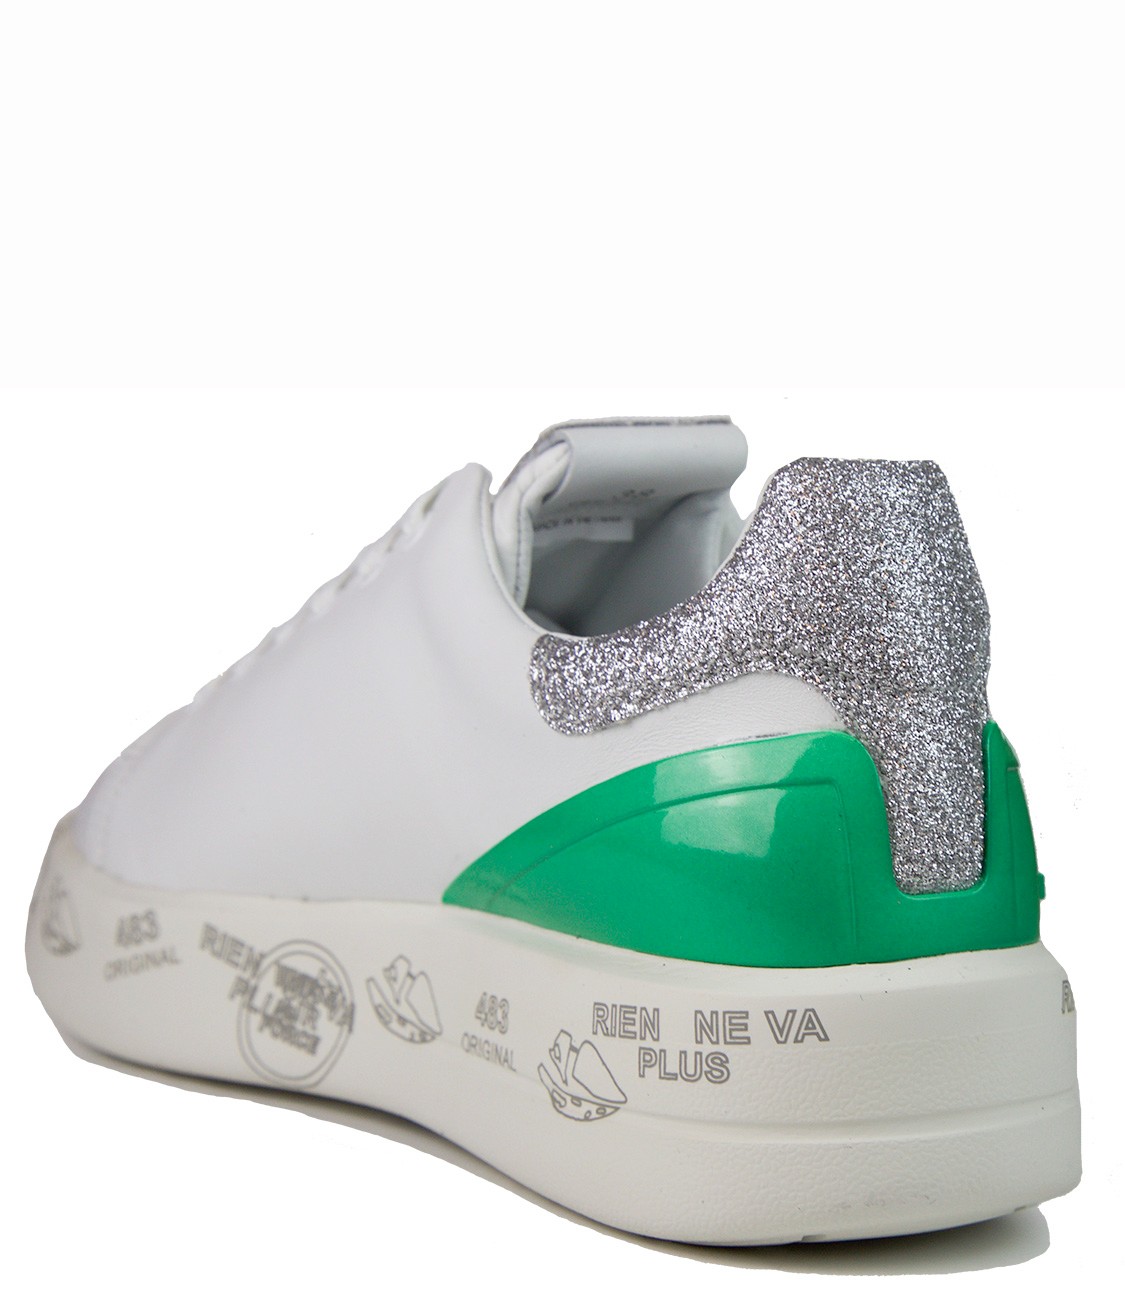 shop Premiata White  Scarpe: Sneakers Premiata White, modello Belle, bianca, in pelle, dettagli glitter argento e verde lucido.

Composizione: 100% pelle.
Suola: 100% gomma.
 number 1156